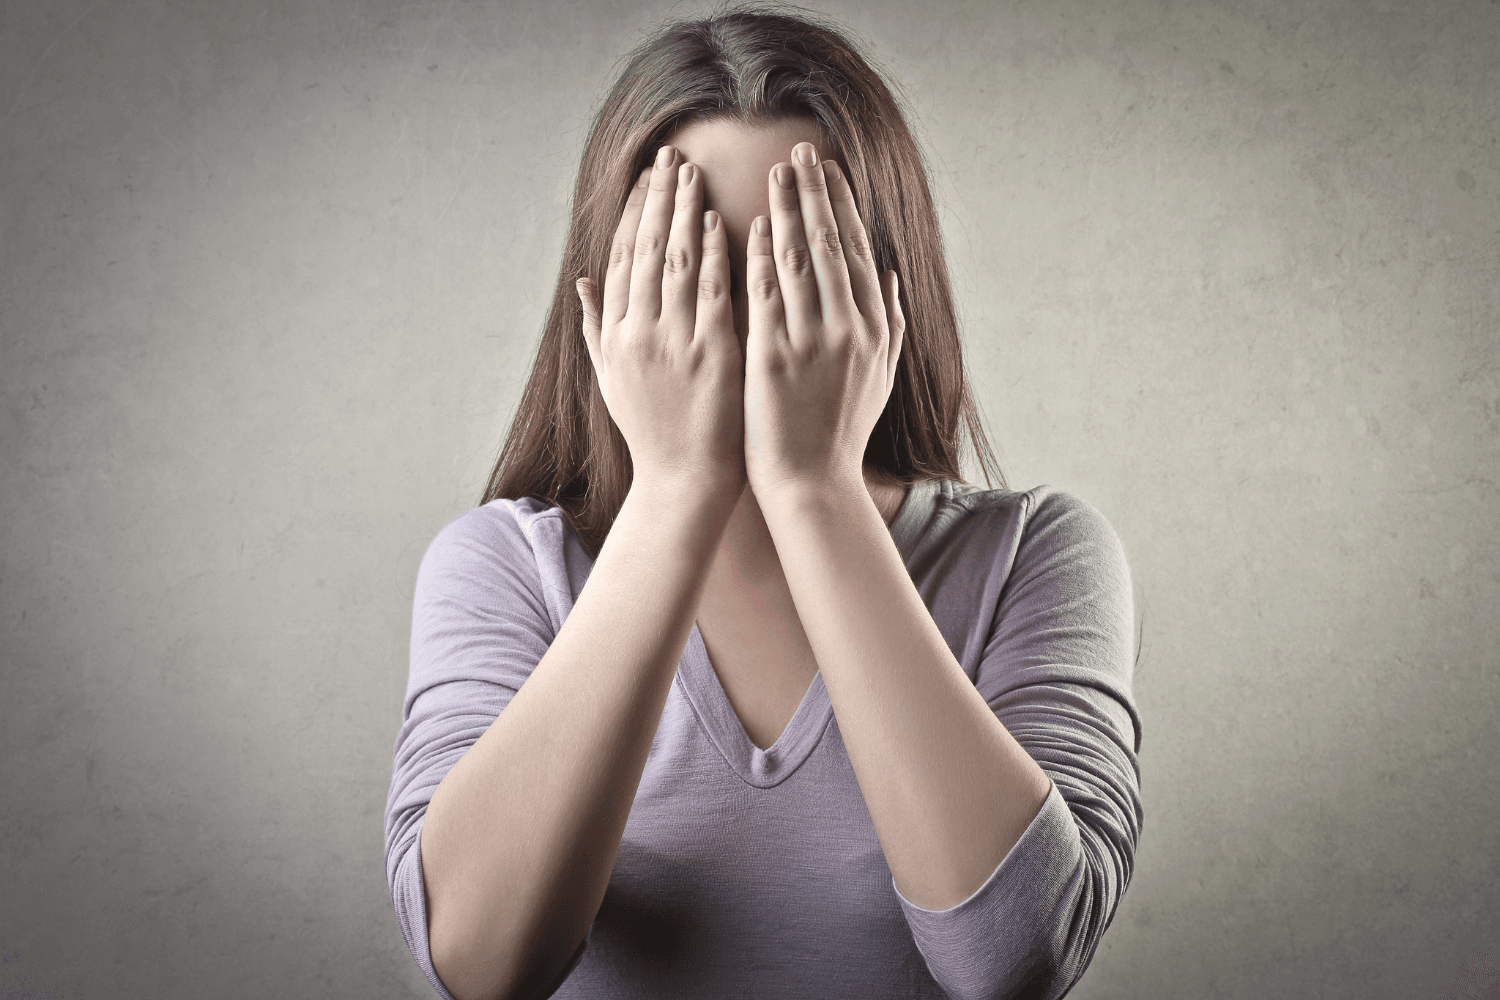 Anxiete sociale : 6 signes pour reconnaître une phobie sociale et la soigner